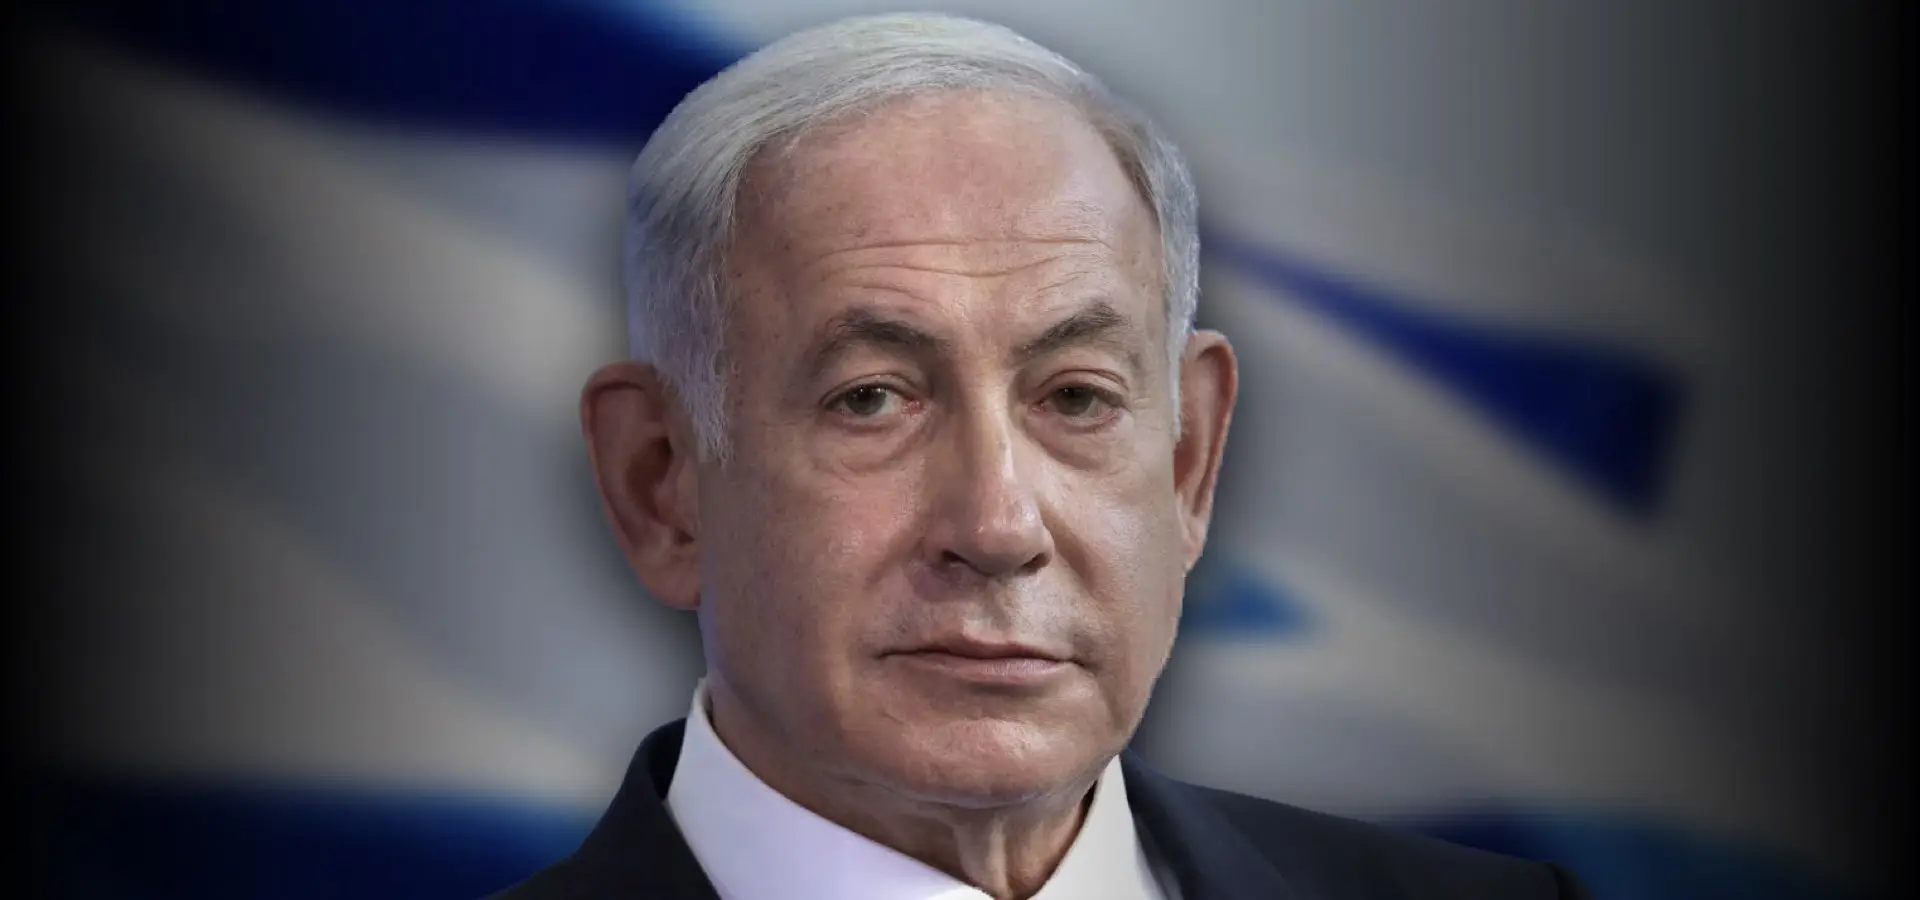 ‎Supreme Court Evaluates Law Safeguarding Netanyahu Amidst Conflict Concerns